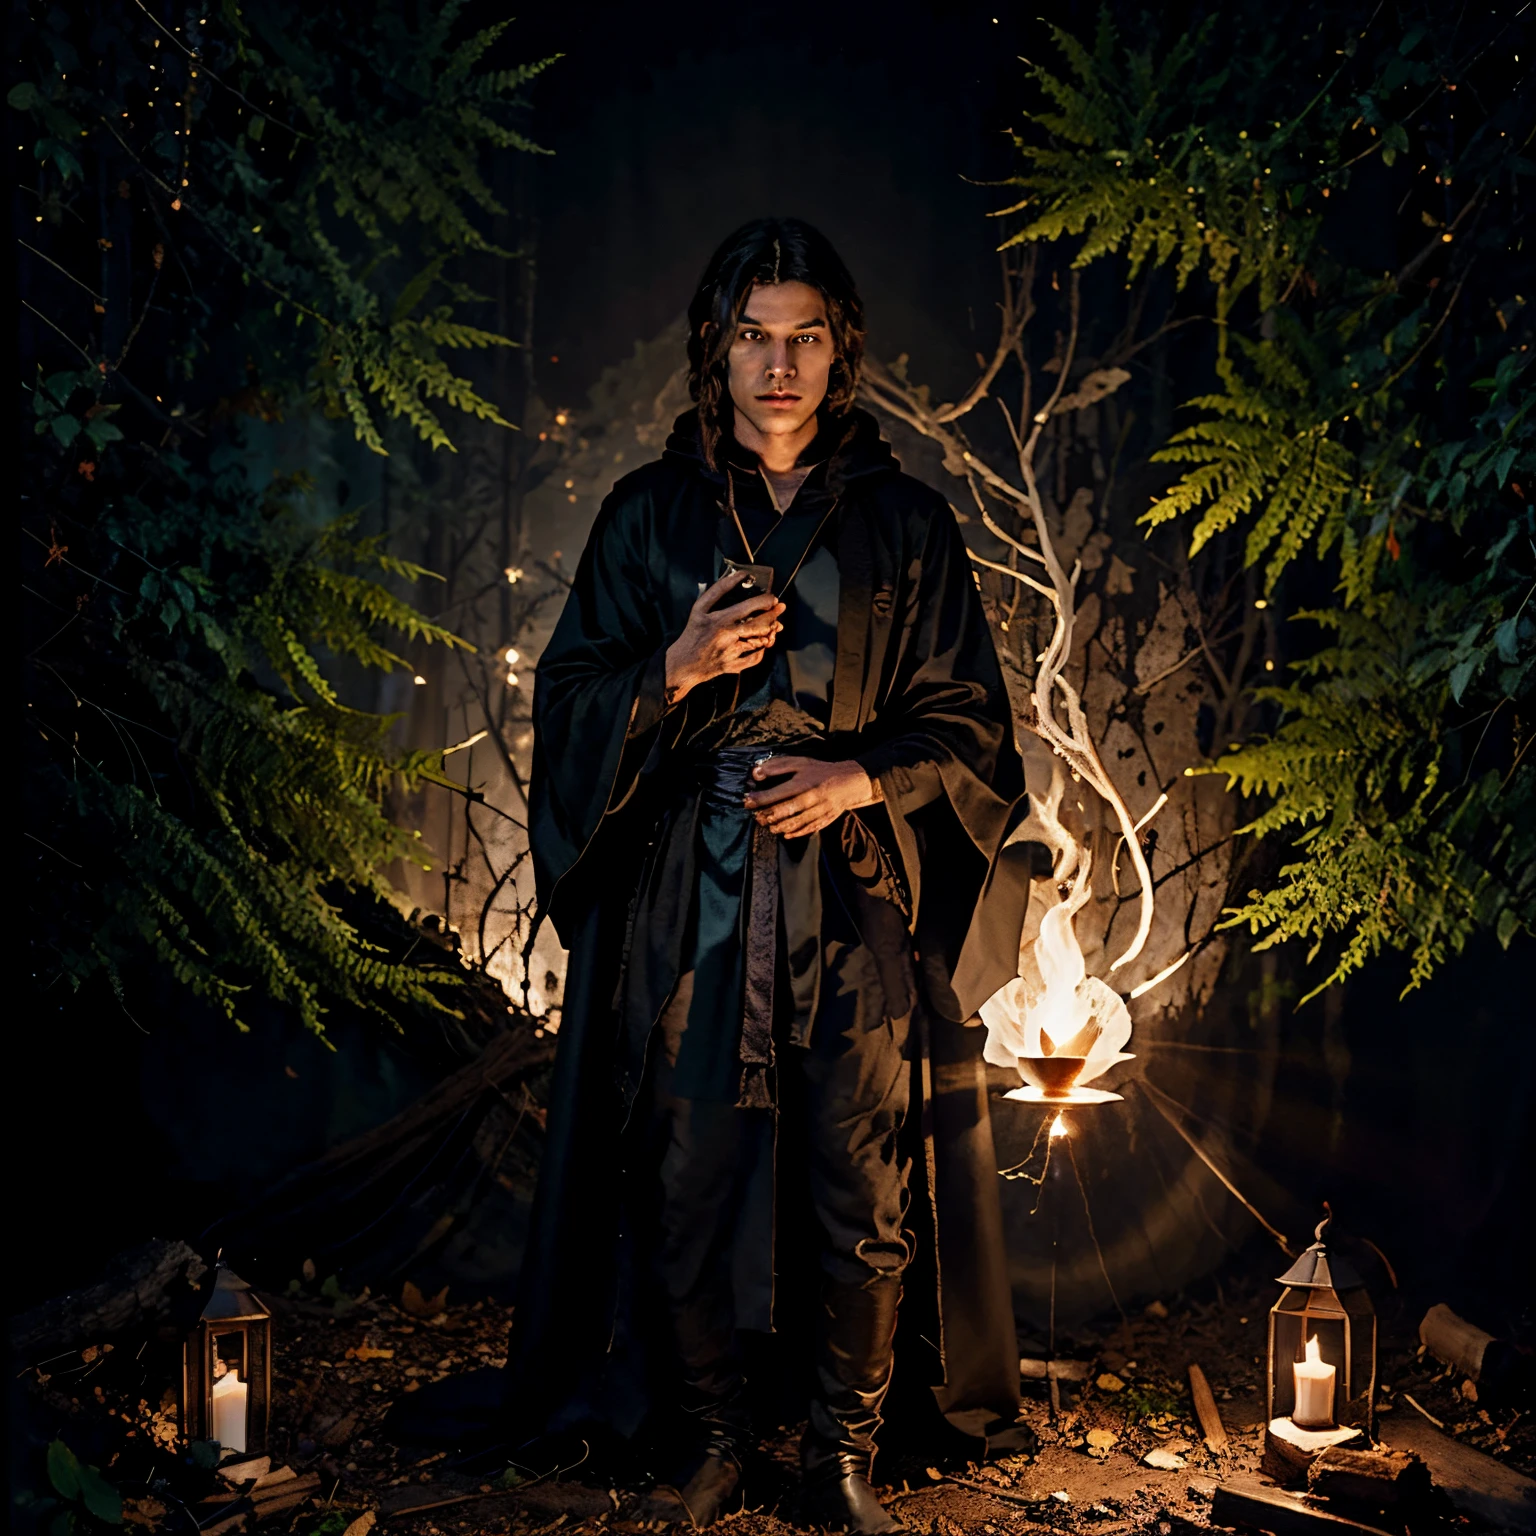 Молодой маг в черных одеждах стоял посреди темного леса., наблюдая за волшебным свитком, разложенным перед ним.